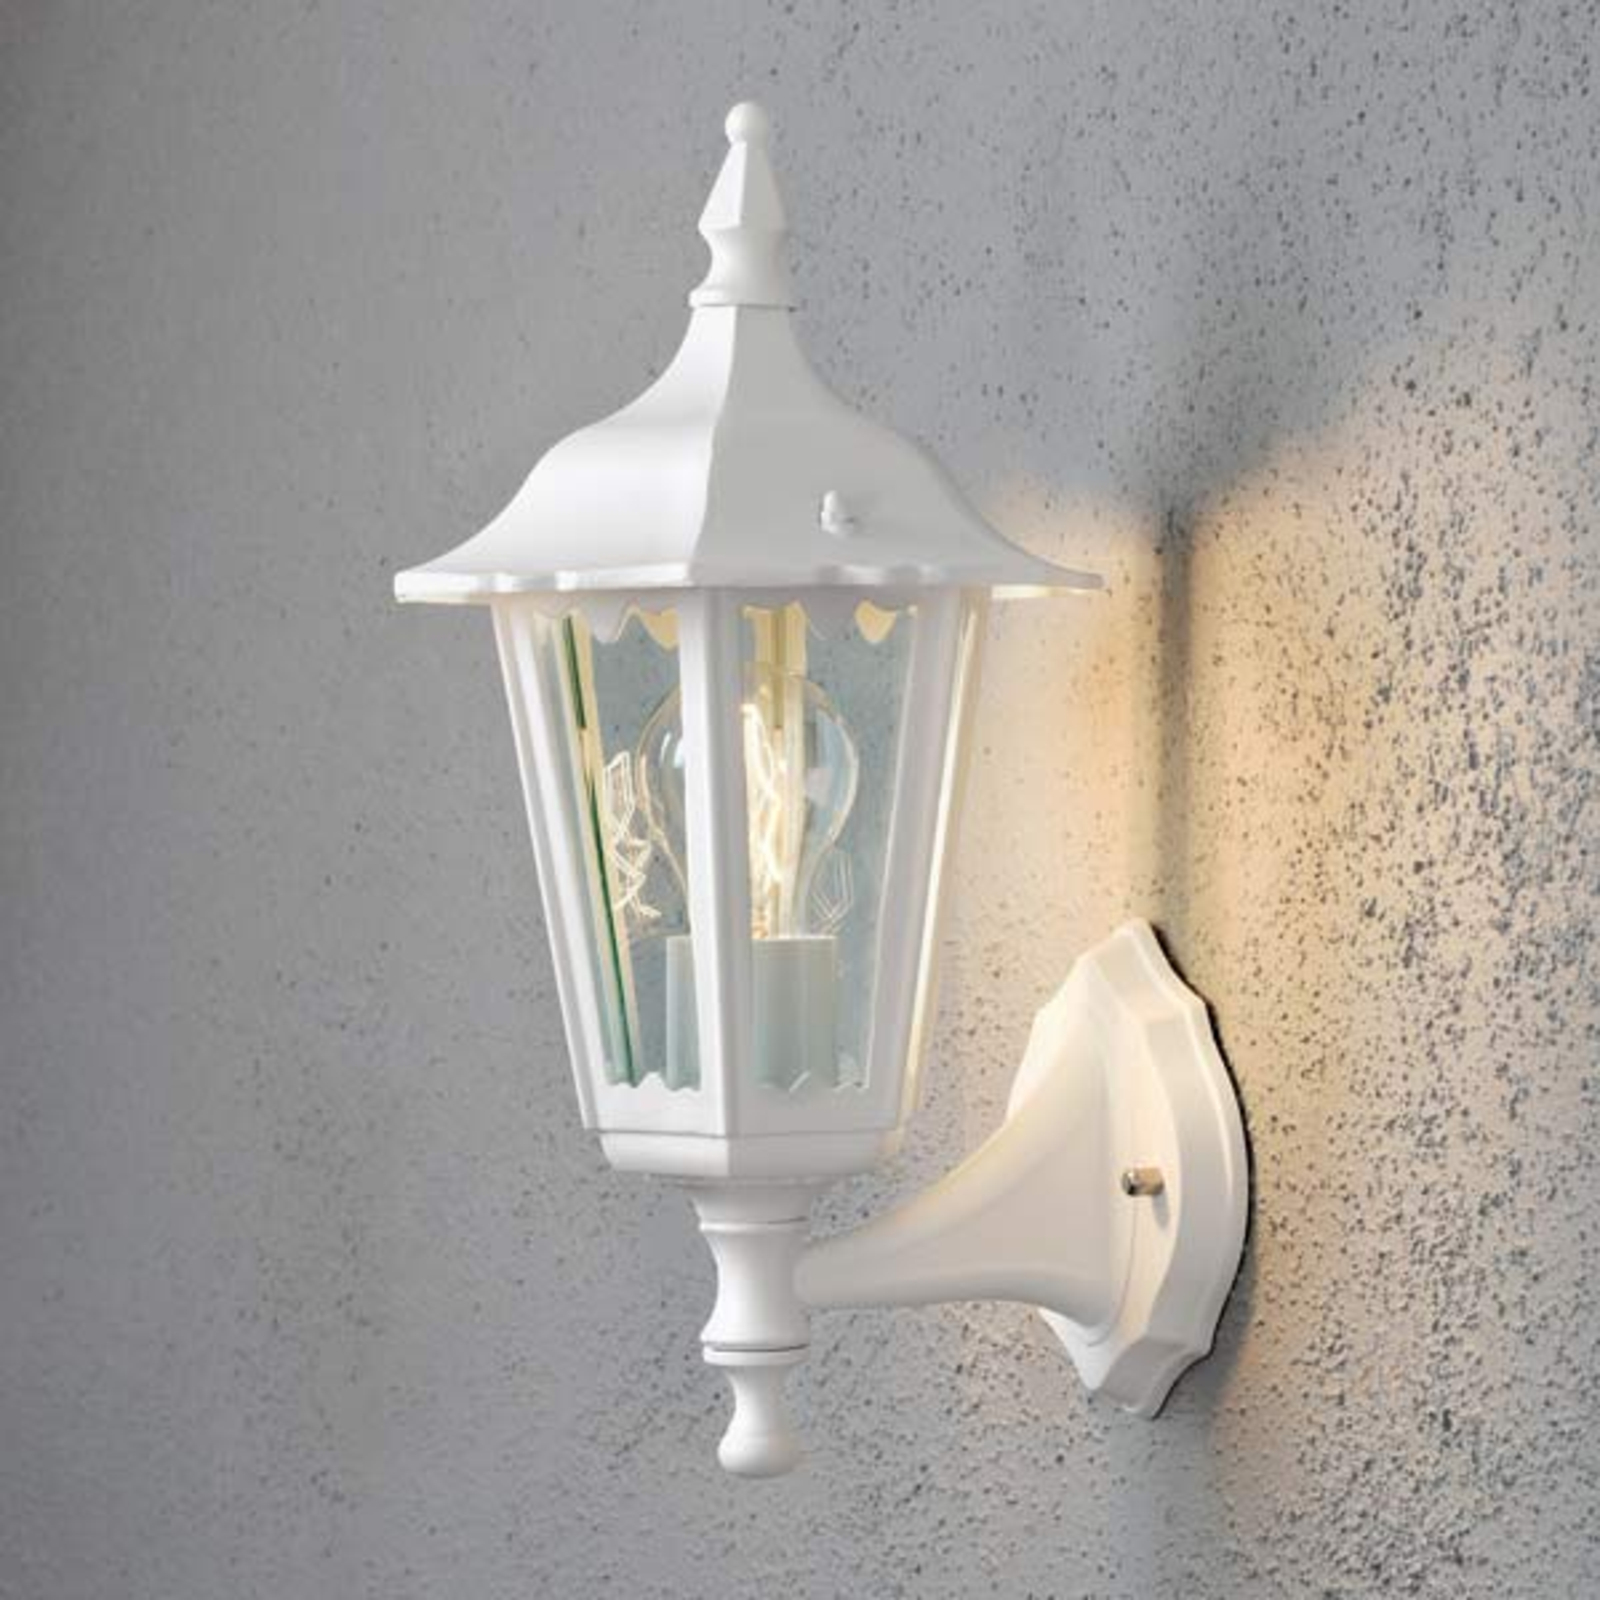 Firenze outdoor wall light, standing, 36 cm, white